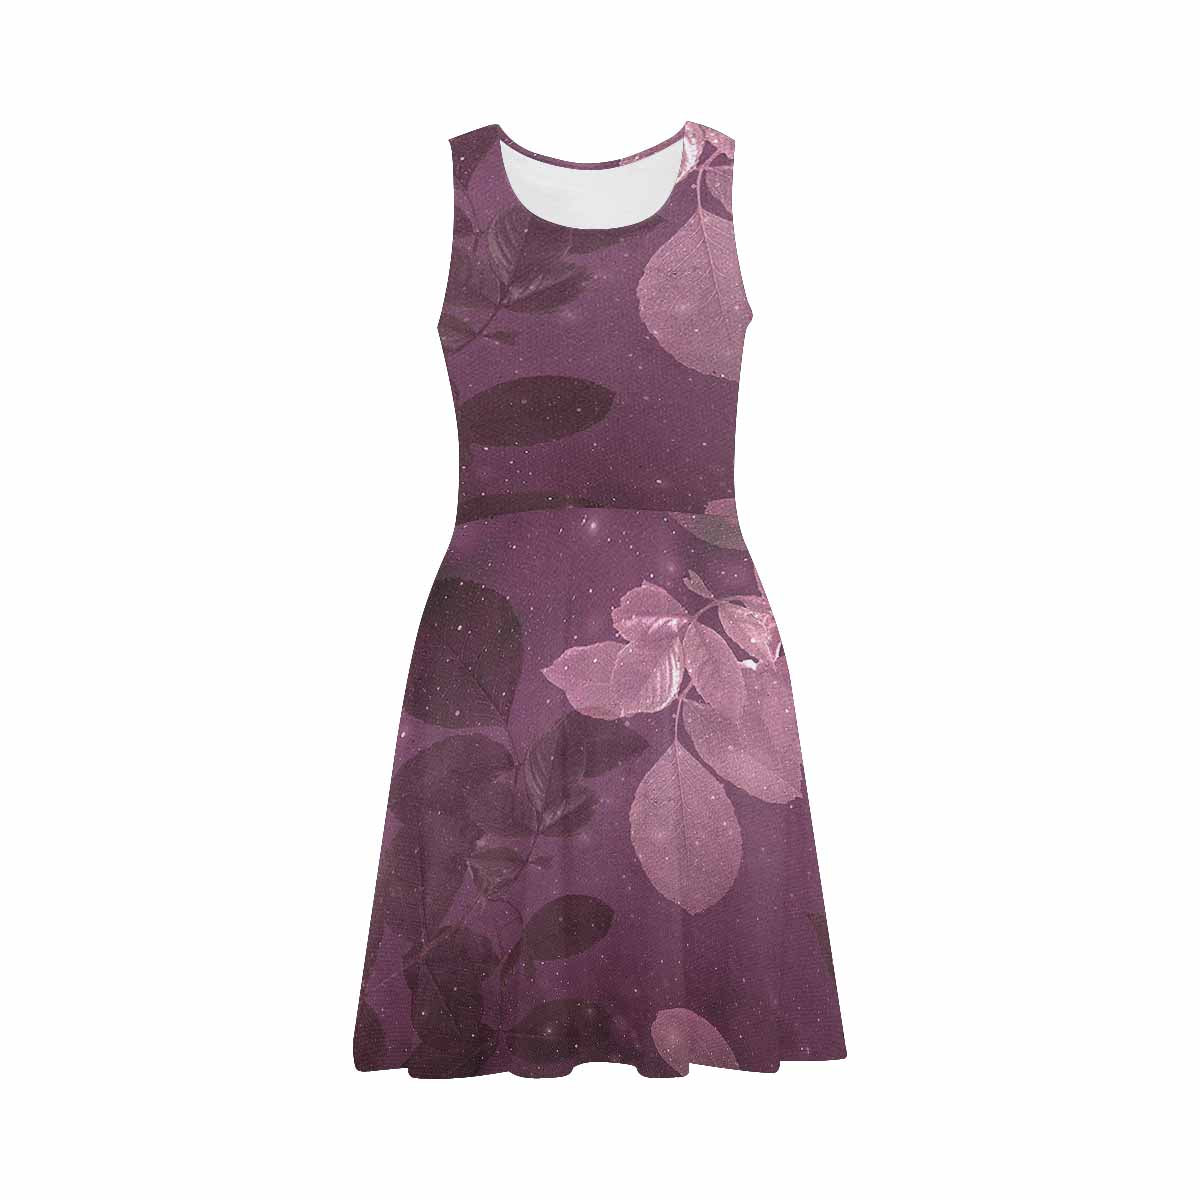 Antique General summer dress, MODEL 09534, design 54